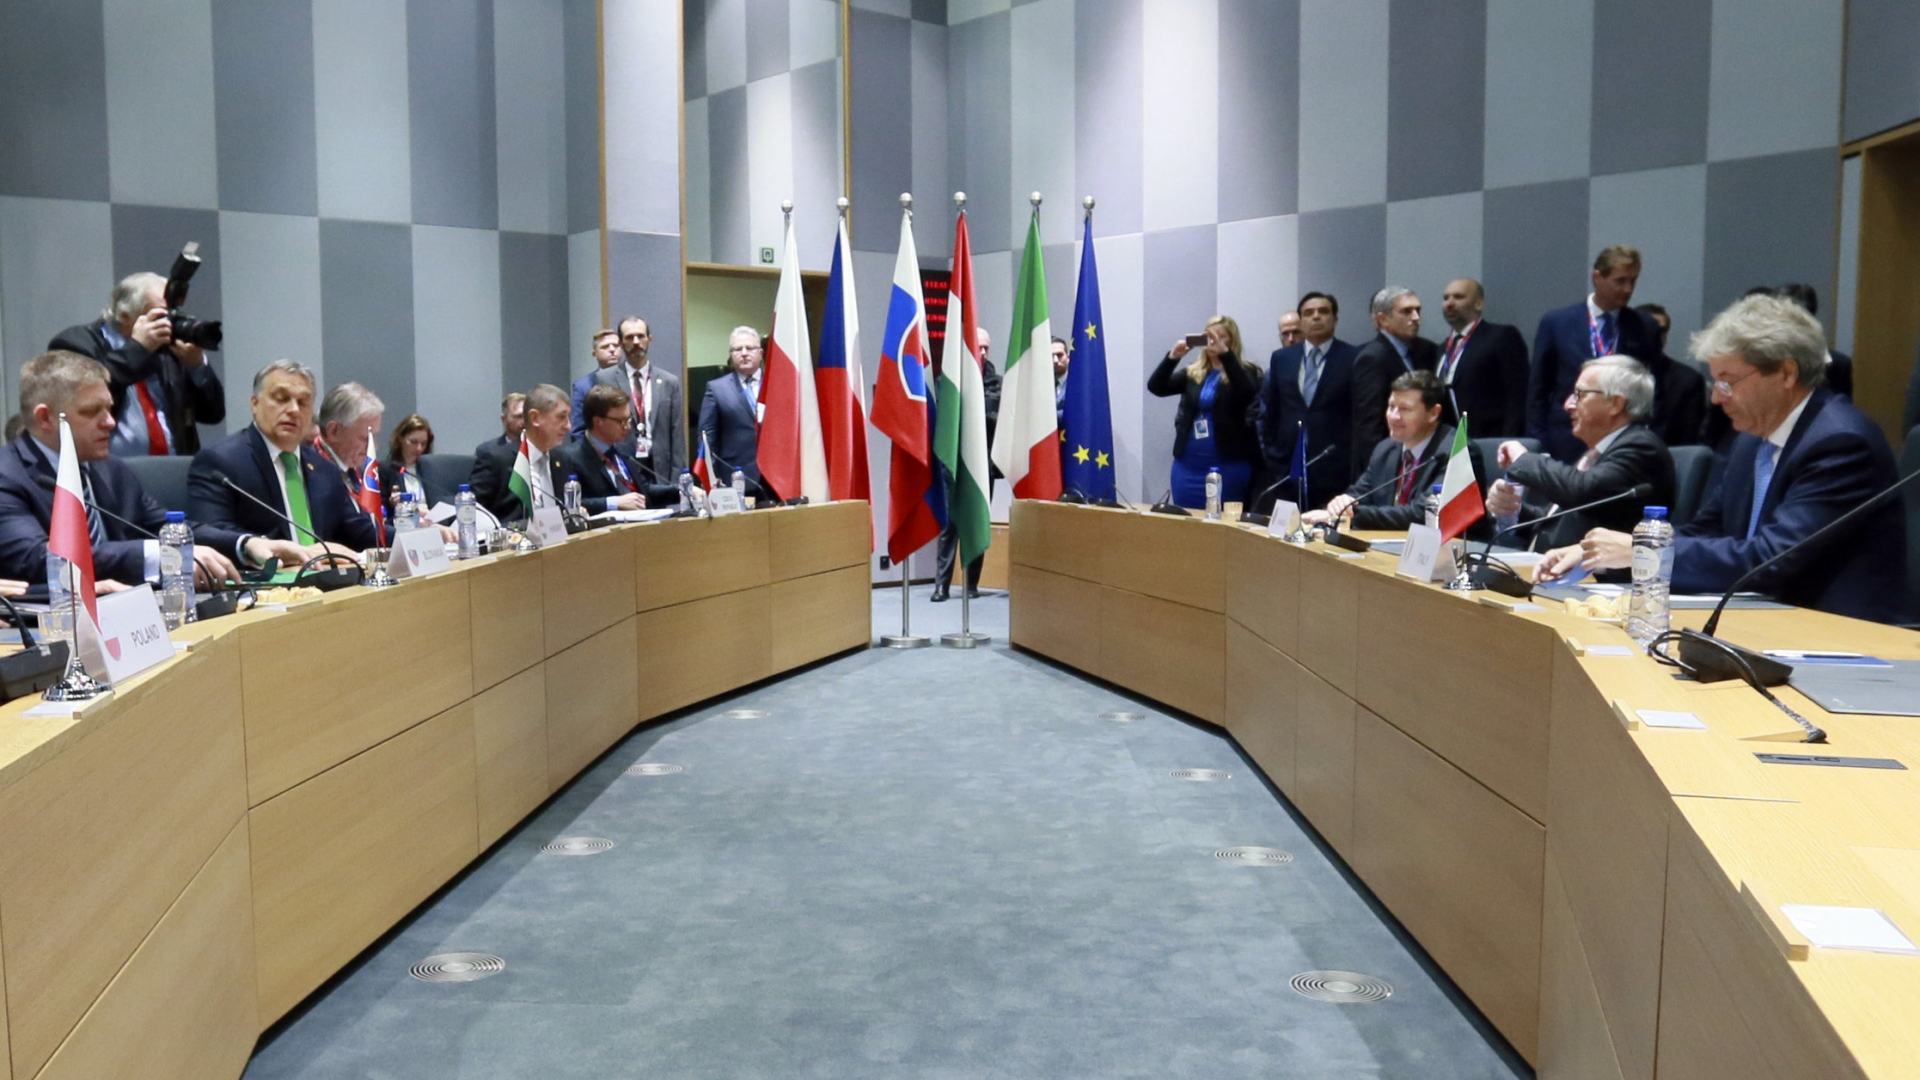 Regierungschefs der Visegrad-Staaten am Tisch, in der Mitte Flaggen